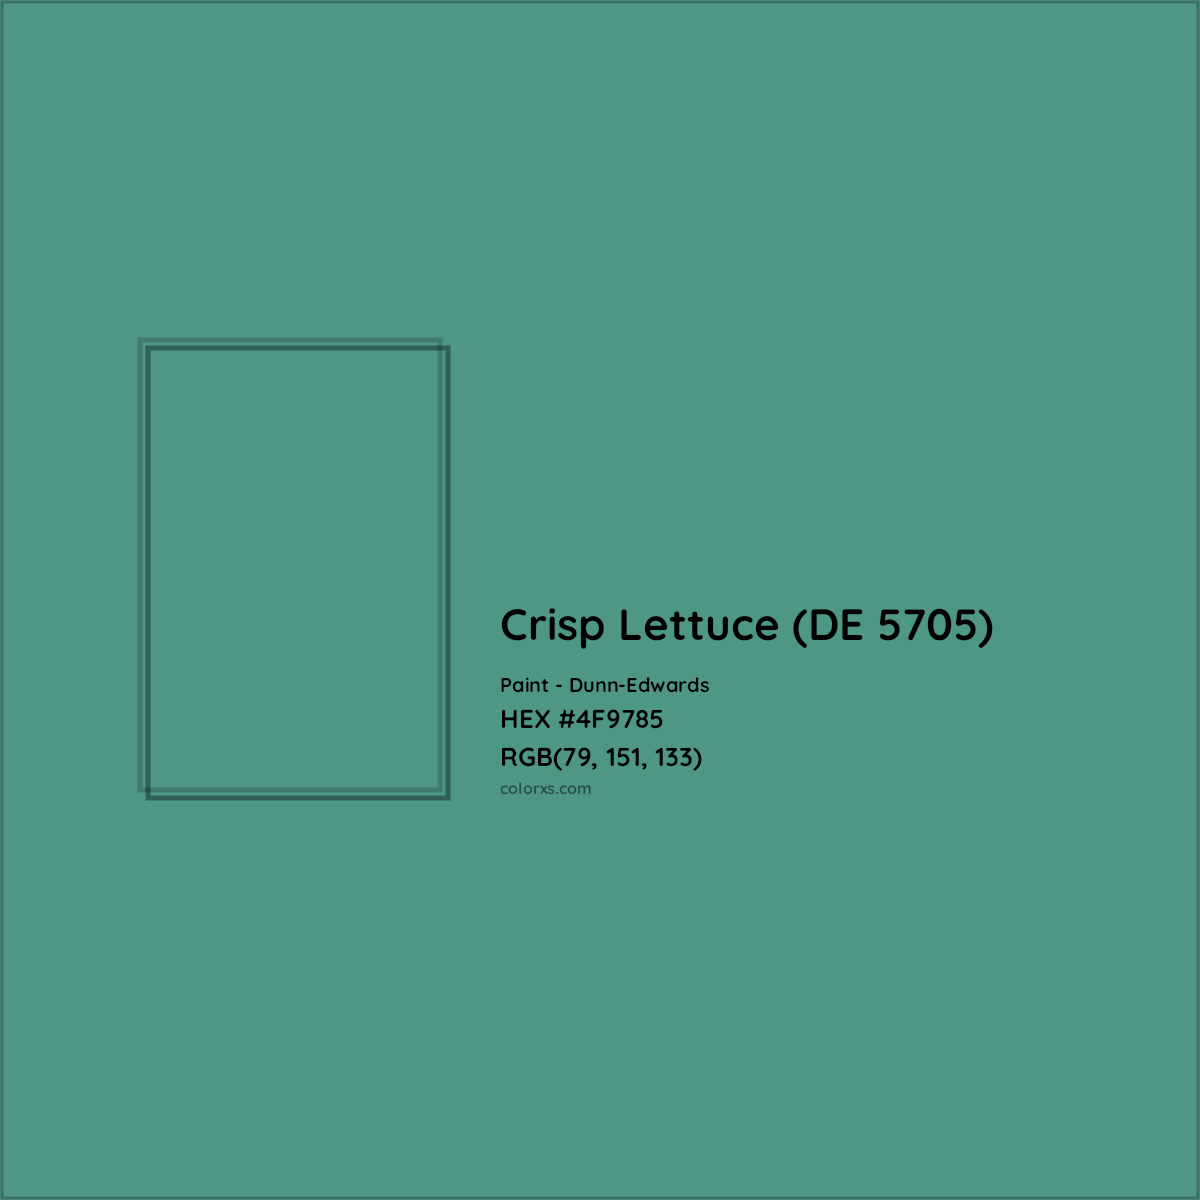 HEX #4F9785 Crisp Lettuce (DE 5705) Paint Dunn-Edwards - Color Code